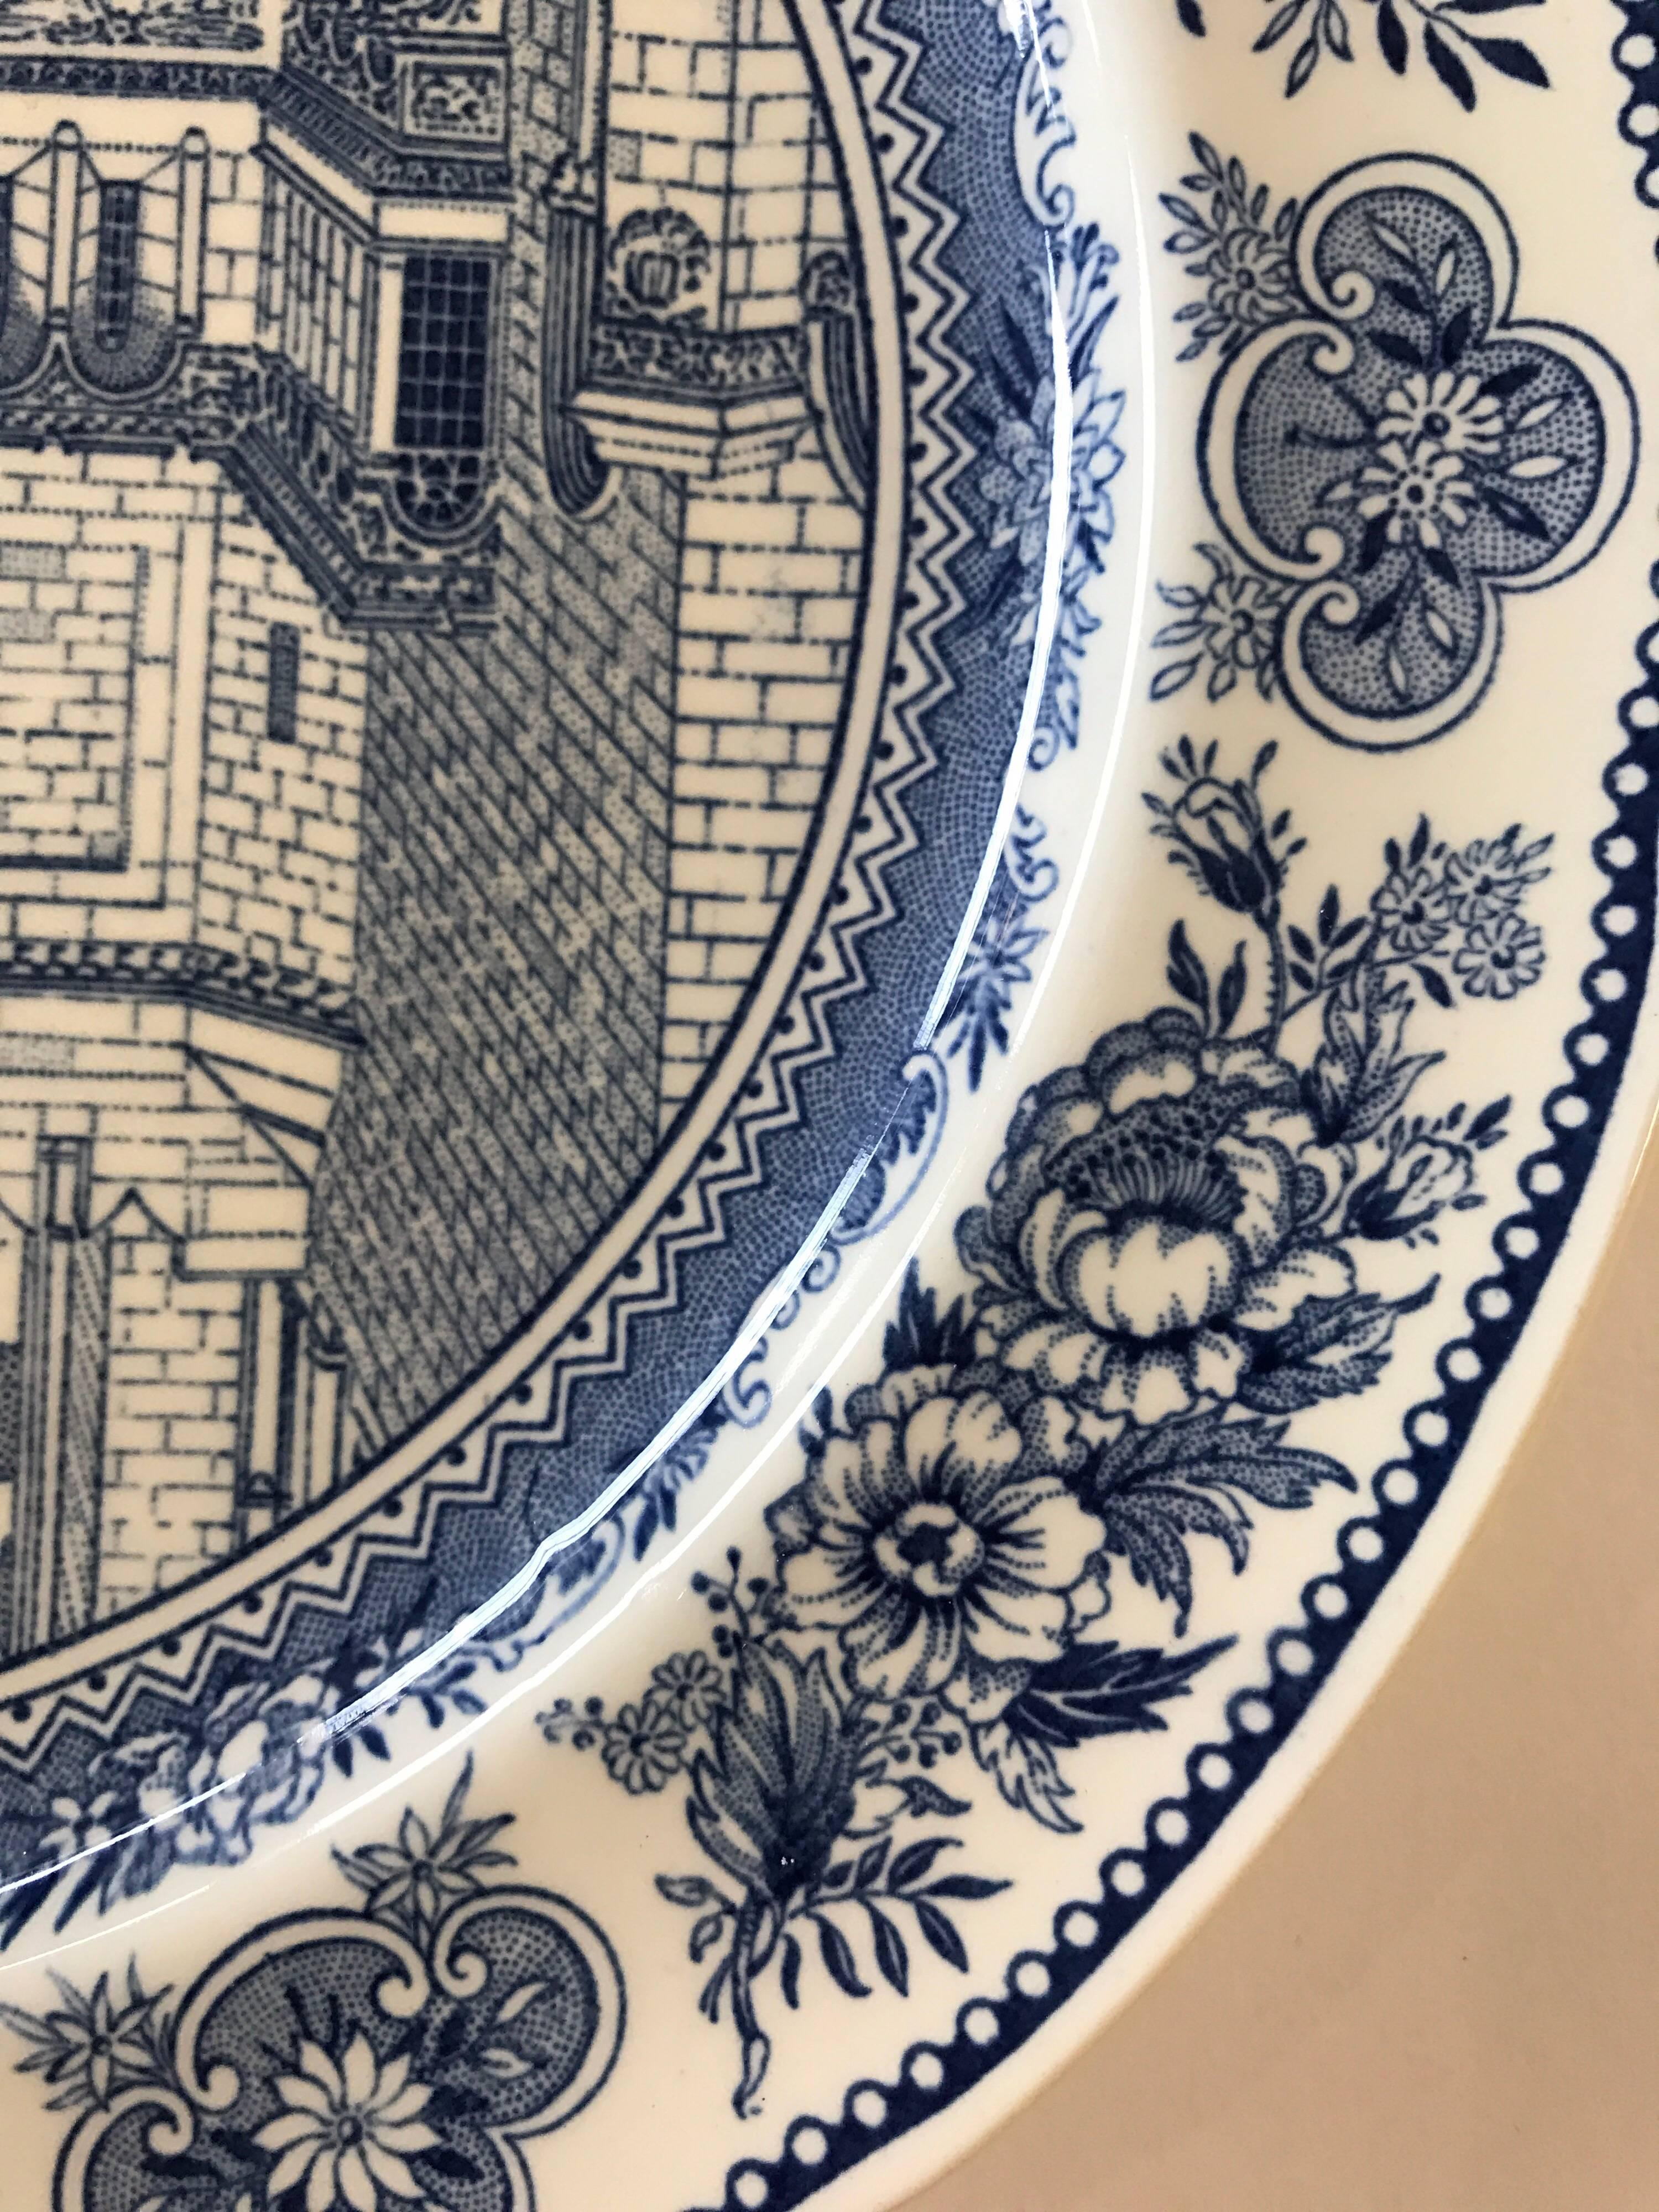 Porcelain Set of Five Wedgwood Blue and White Yale University Plates